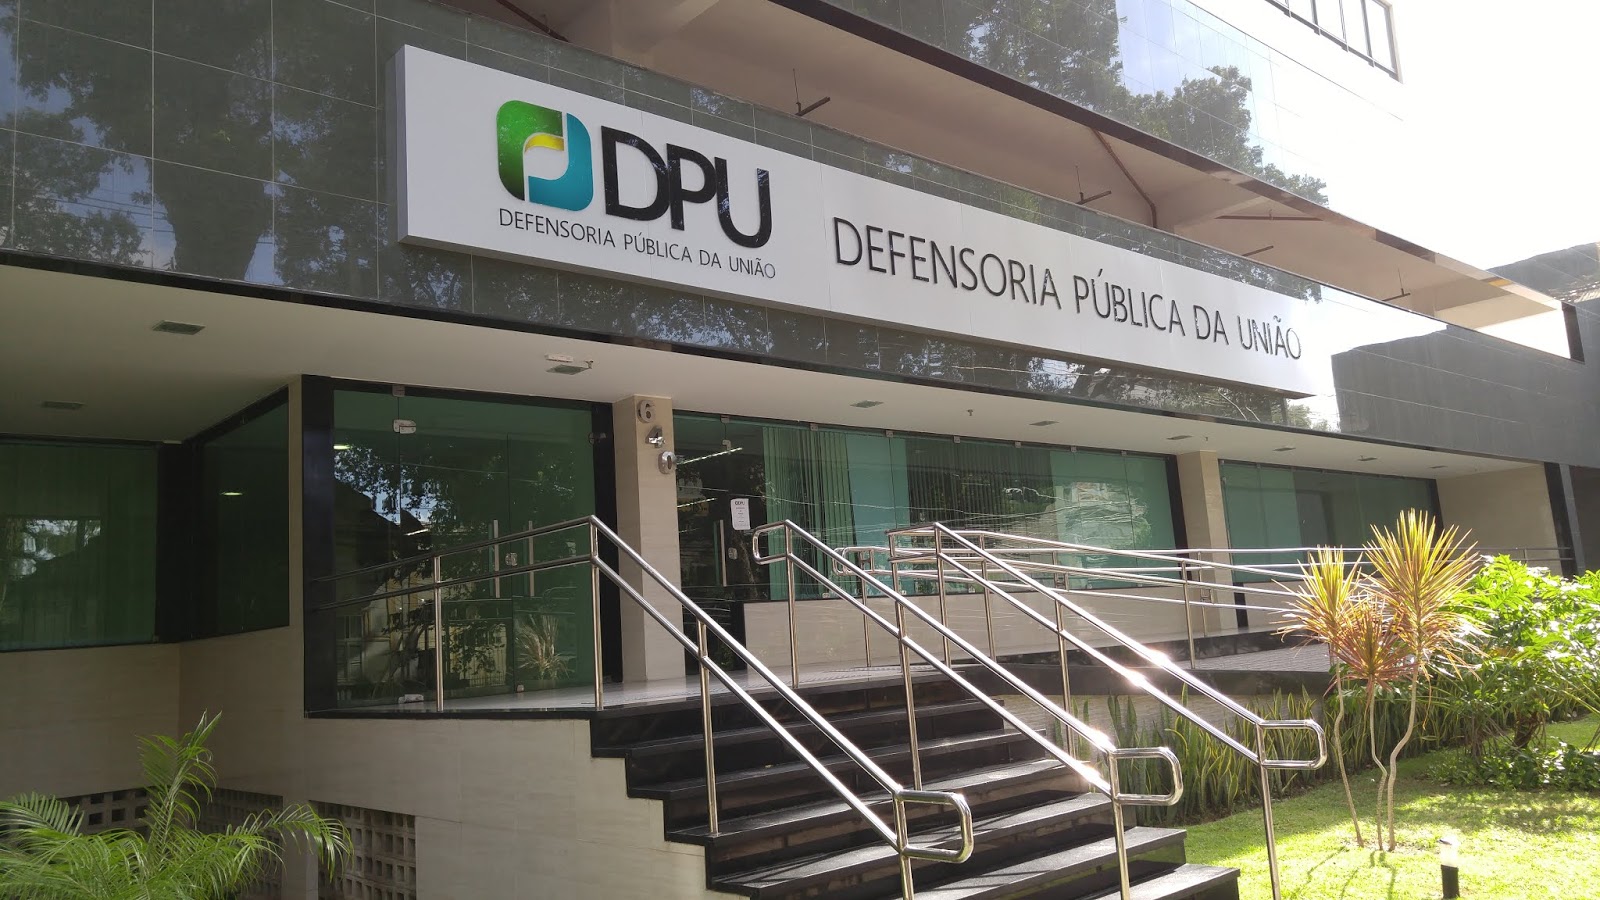 Defensoria Pública da União no Recife mantém suspensão no atendimento até 30 de abril